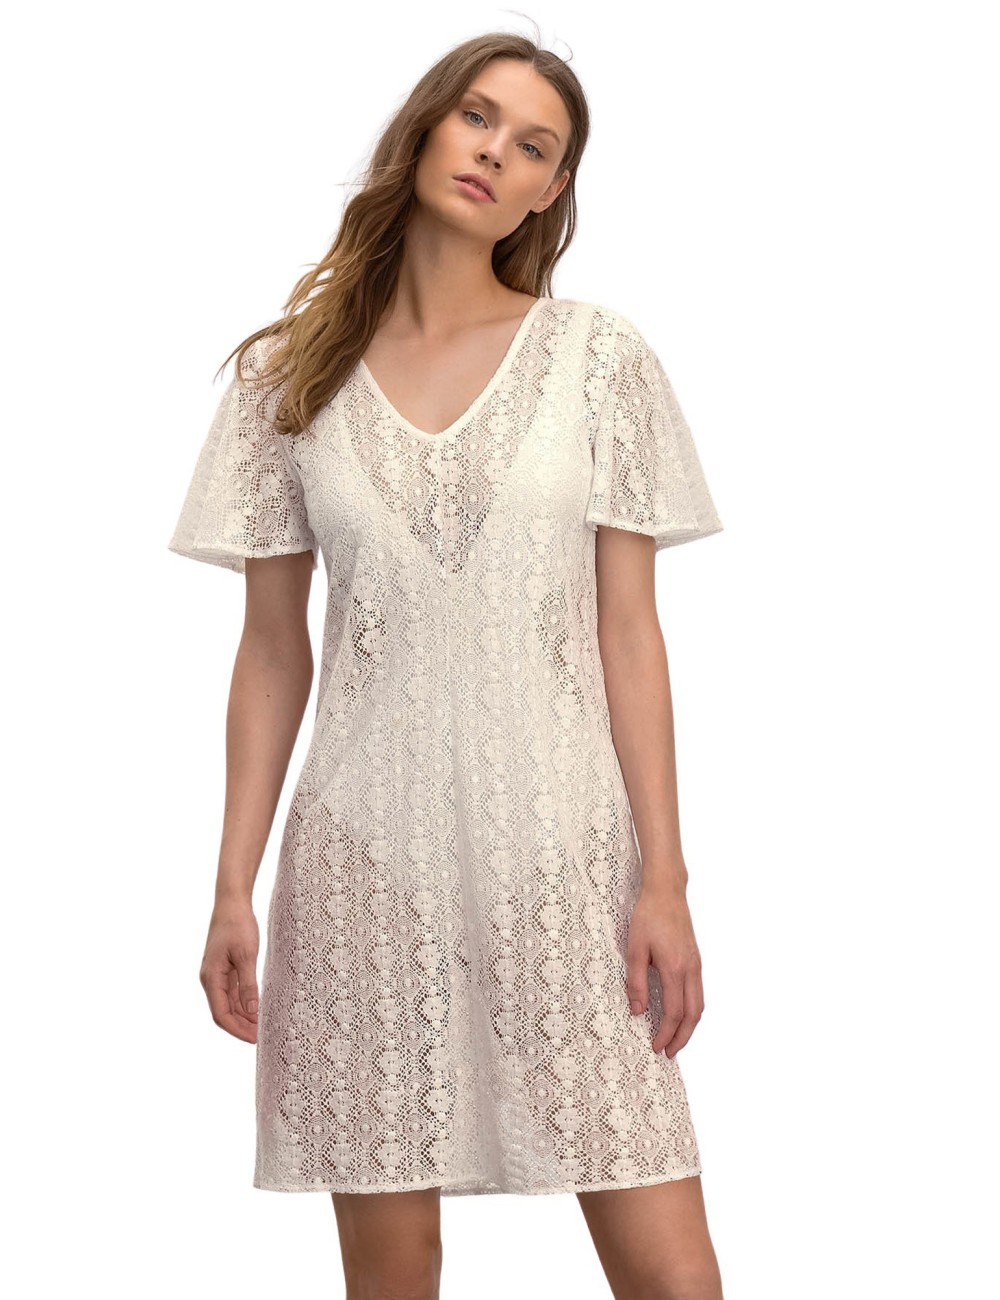 Κοντομάνικο Μονόχρωμο Φόρεμα Παραλίας Vamp 16541 Lamoda.gr